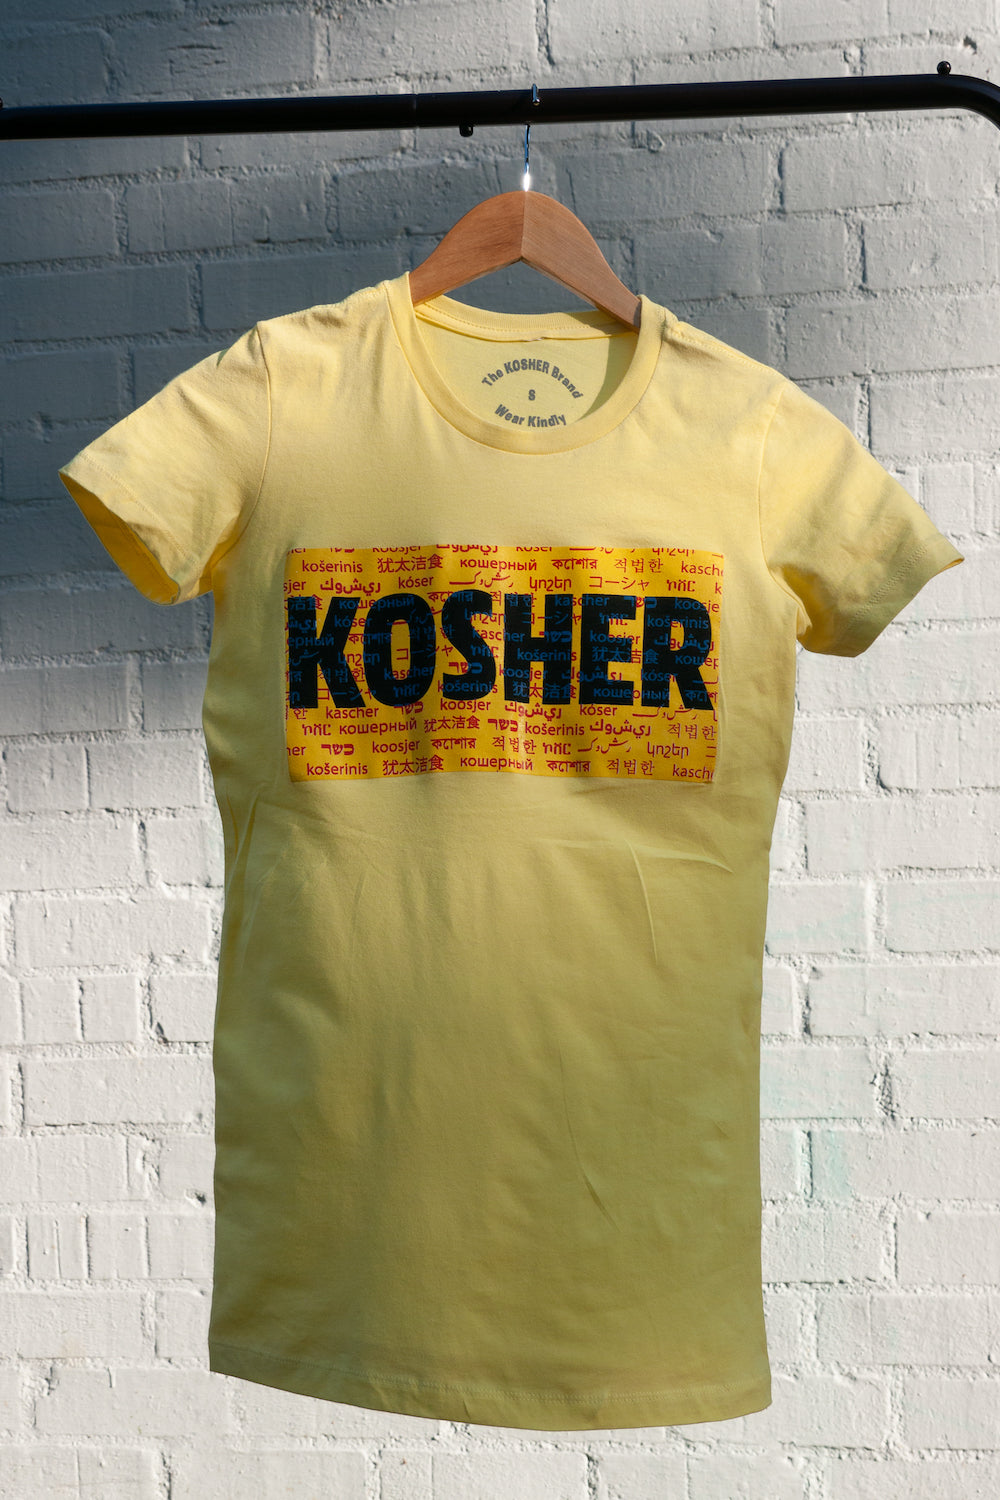 The KOSHER Kesher Tee - Women’s Slim Fit, Yellow